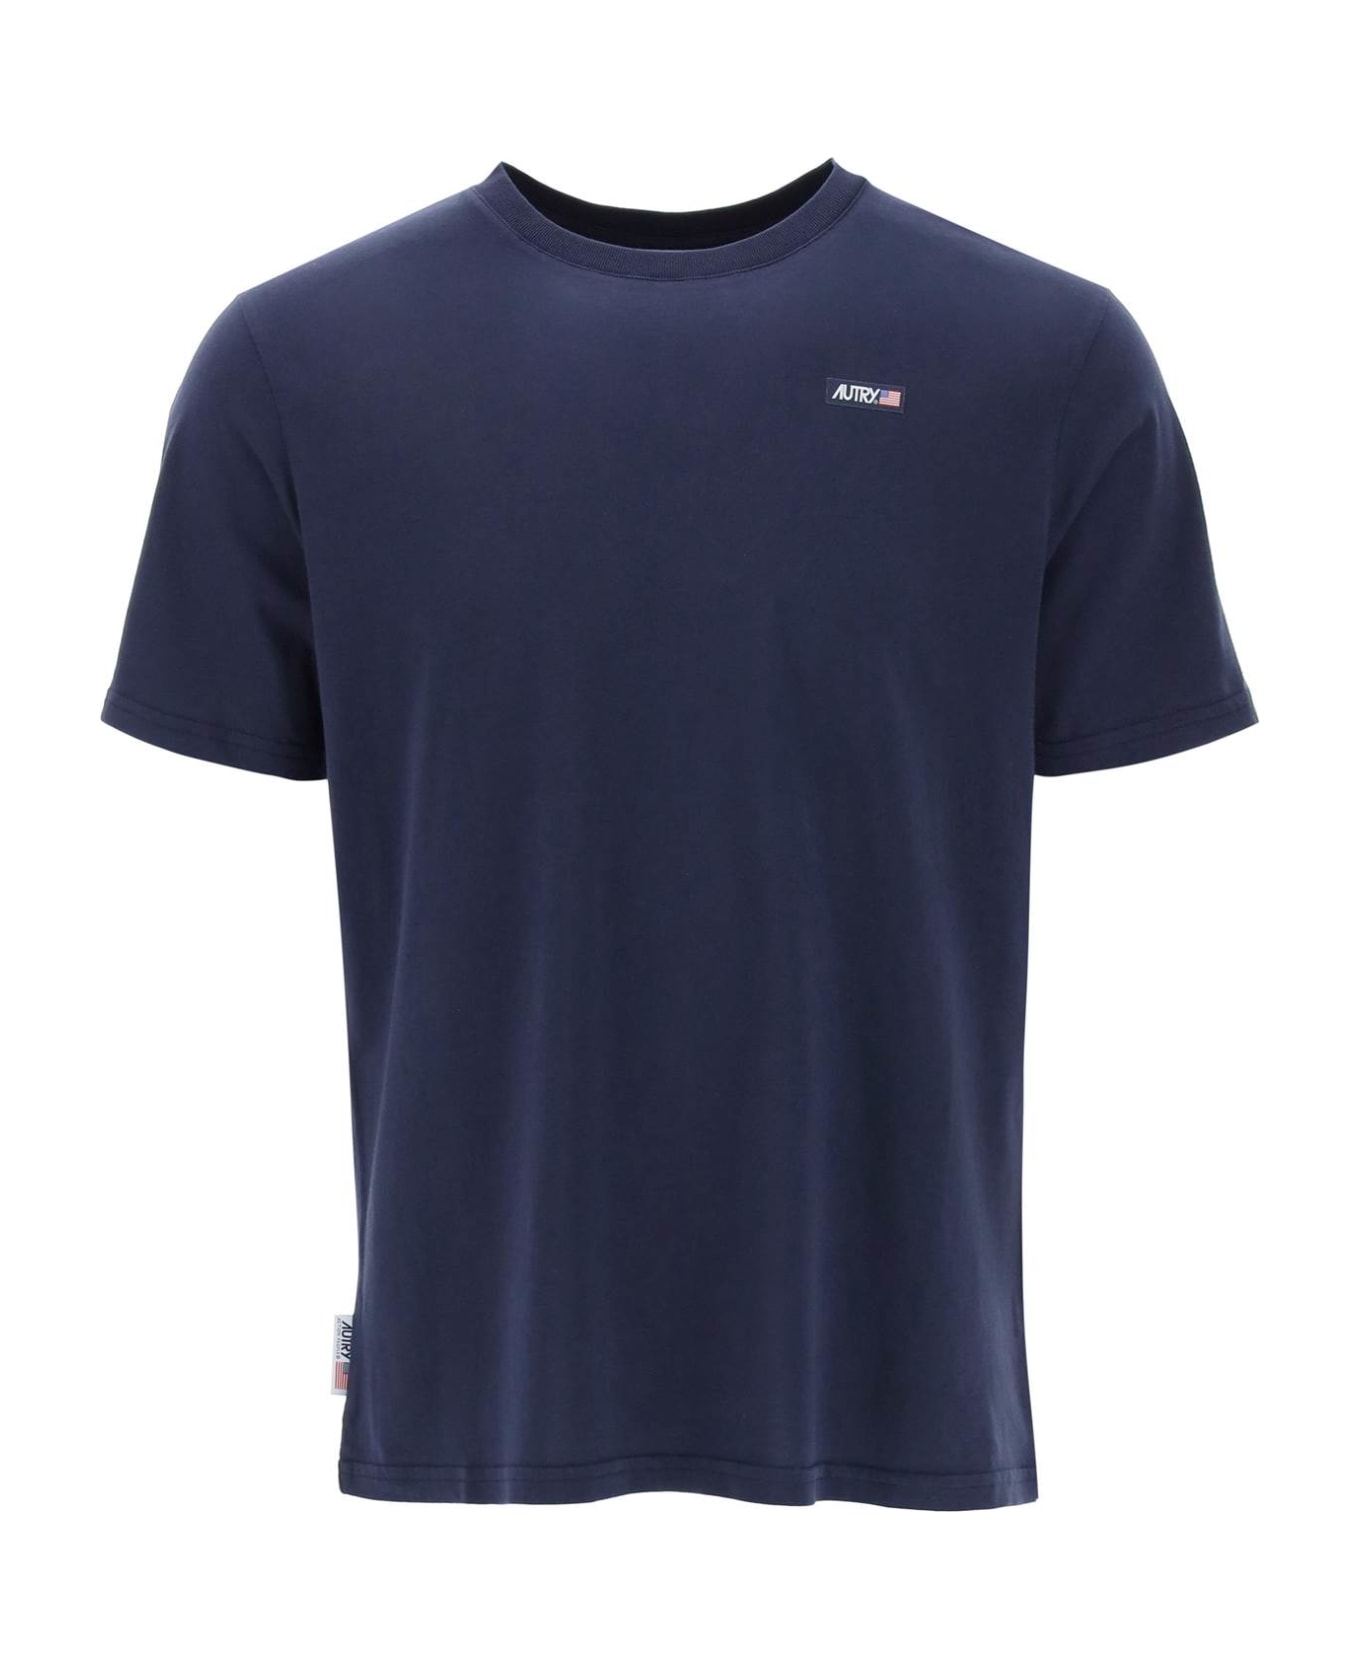 Autry Cotton Crew-neck T-shirt - Blue Tシャツ